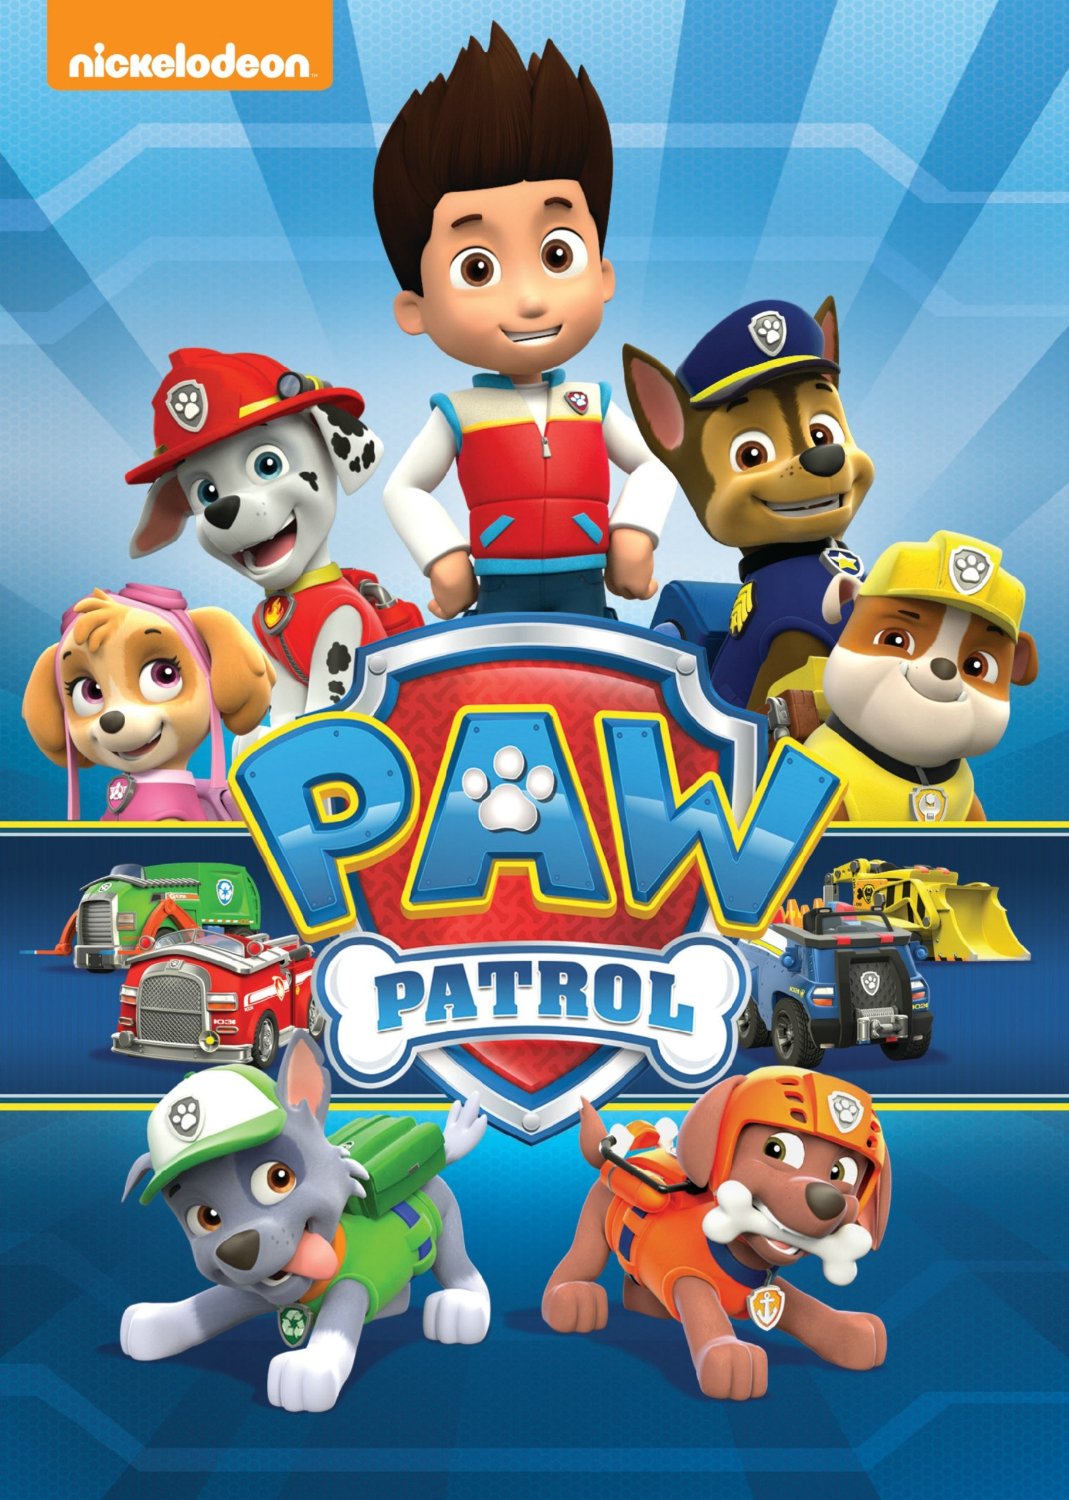 Paw Patrol - Season 4